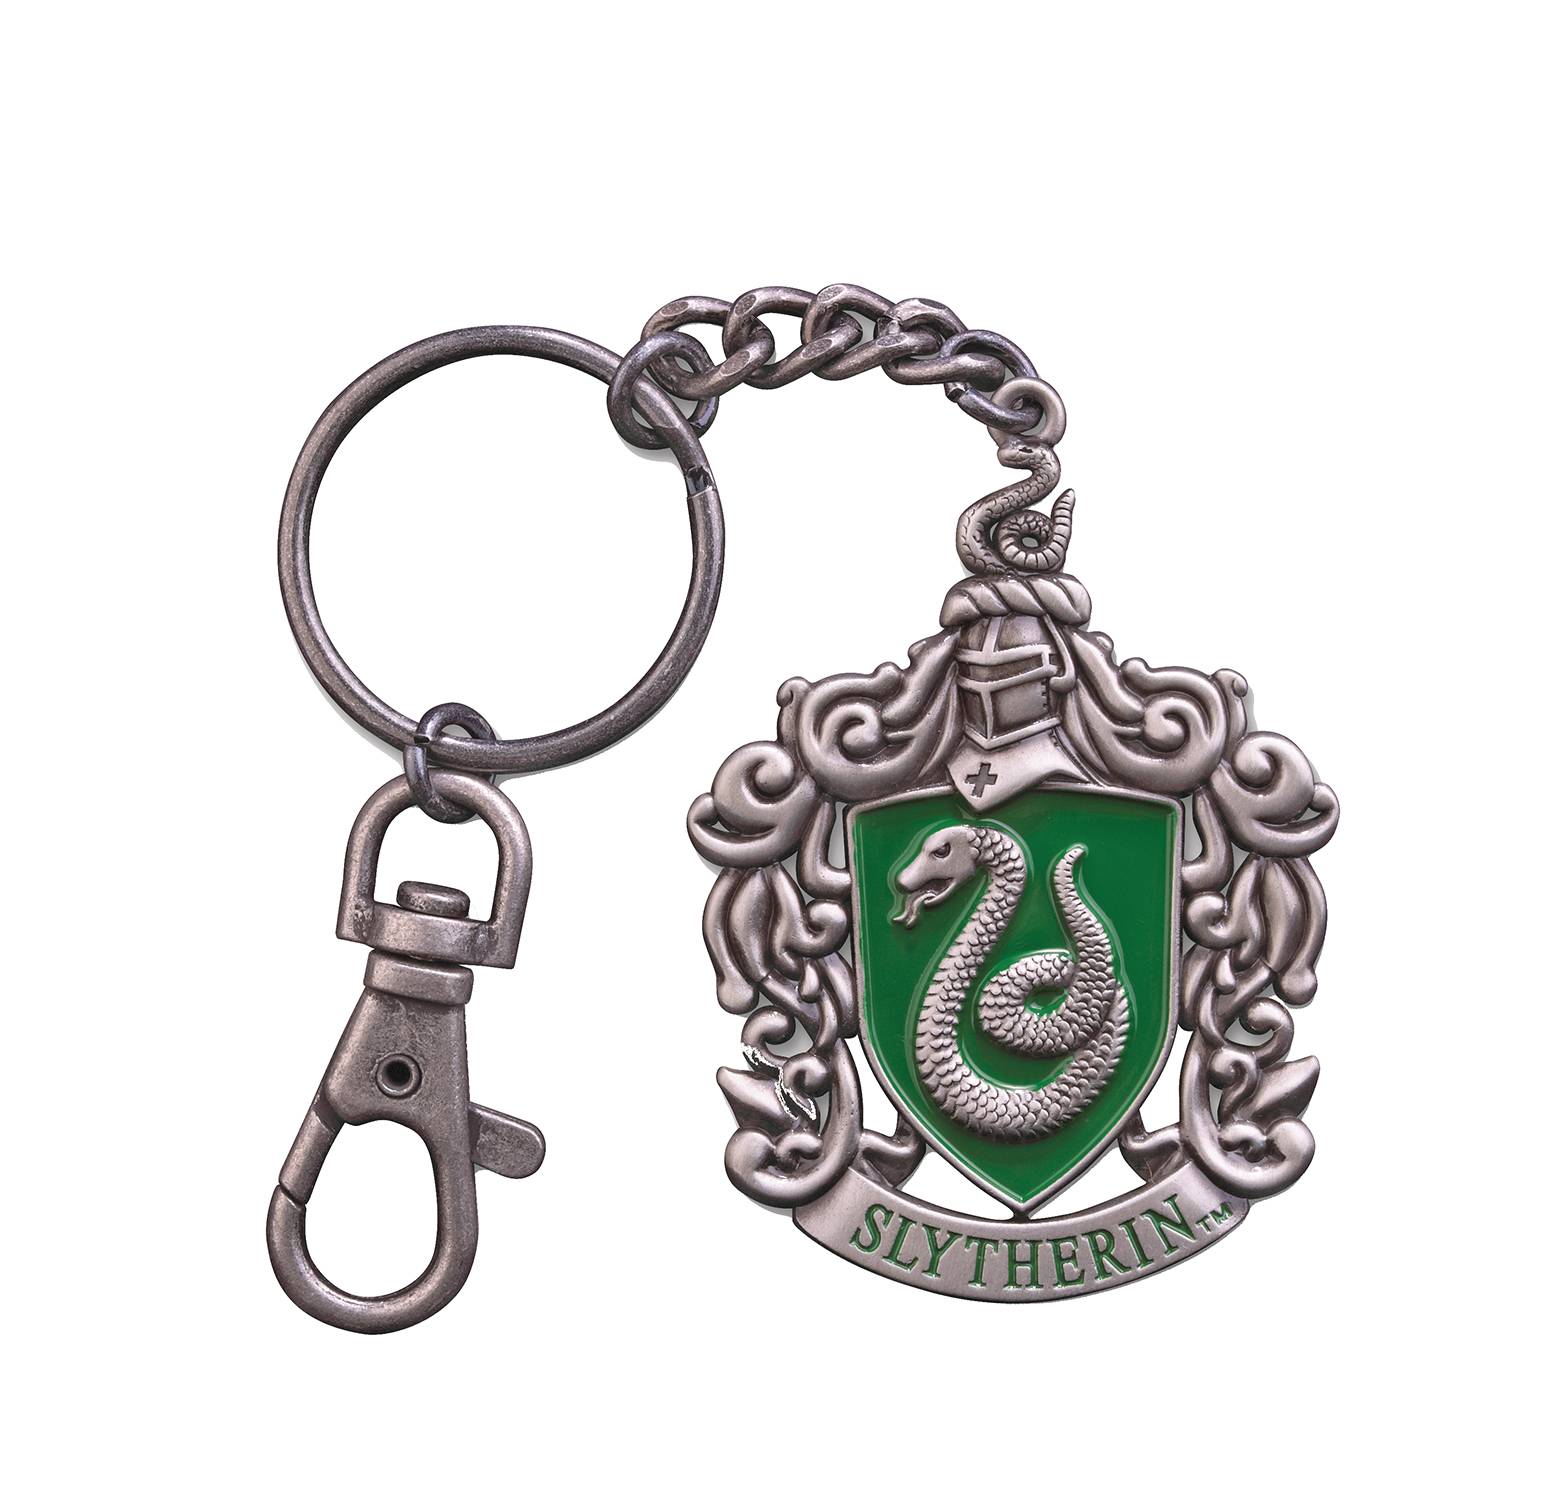 Harry Potter Slytherin Crest Keychain